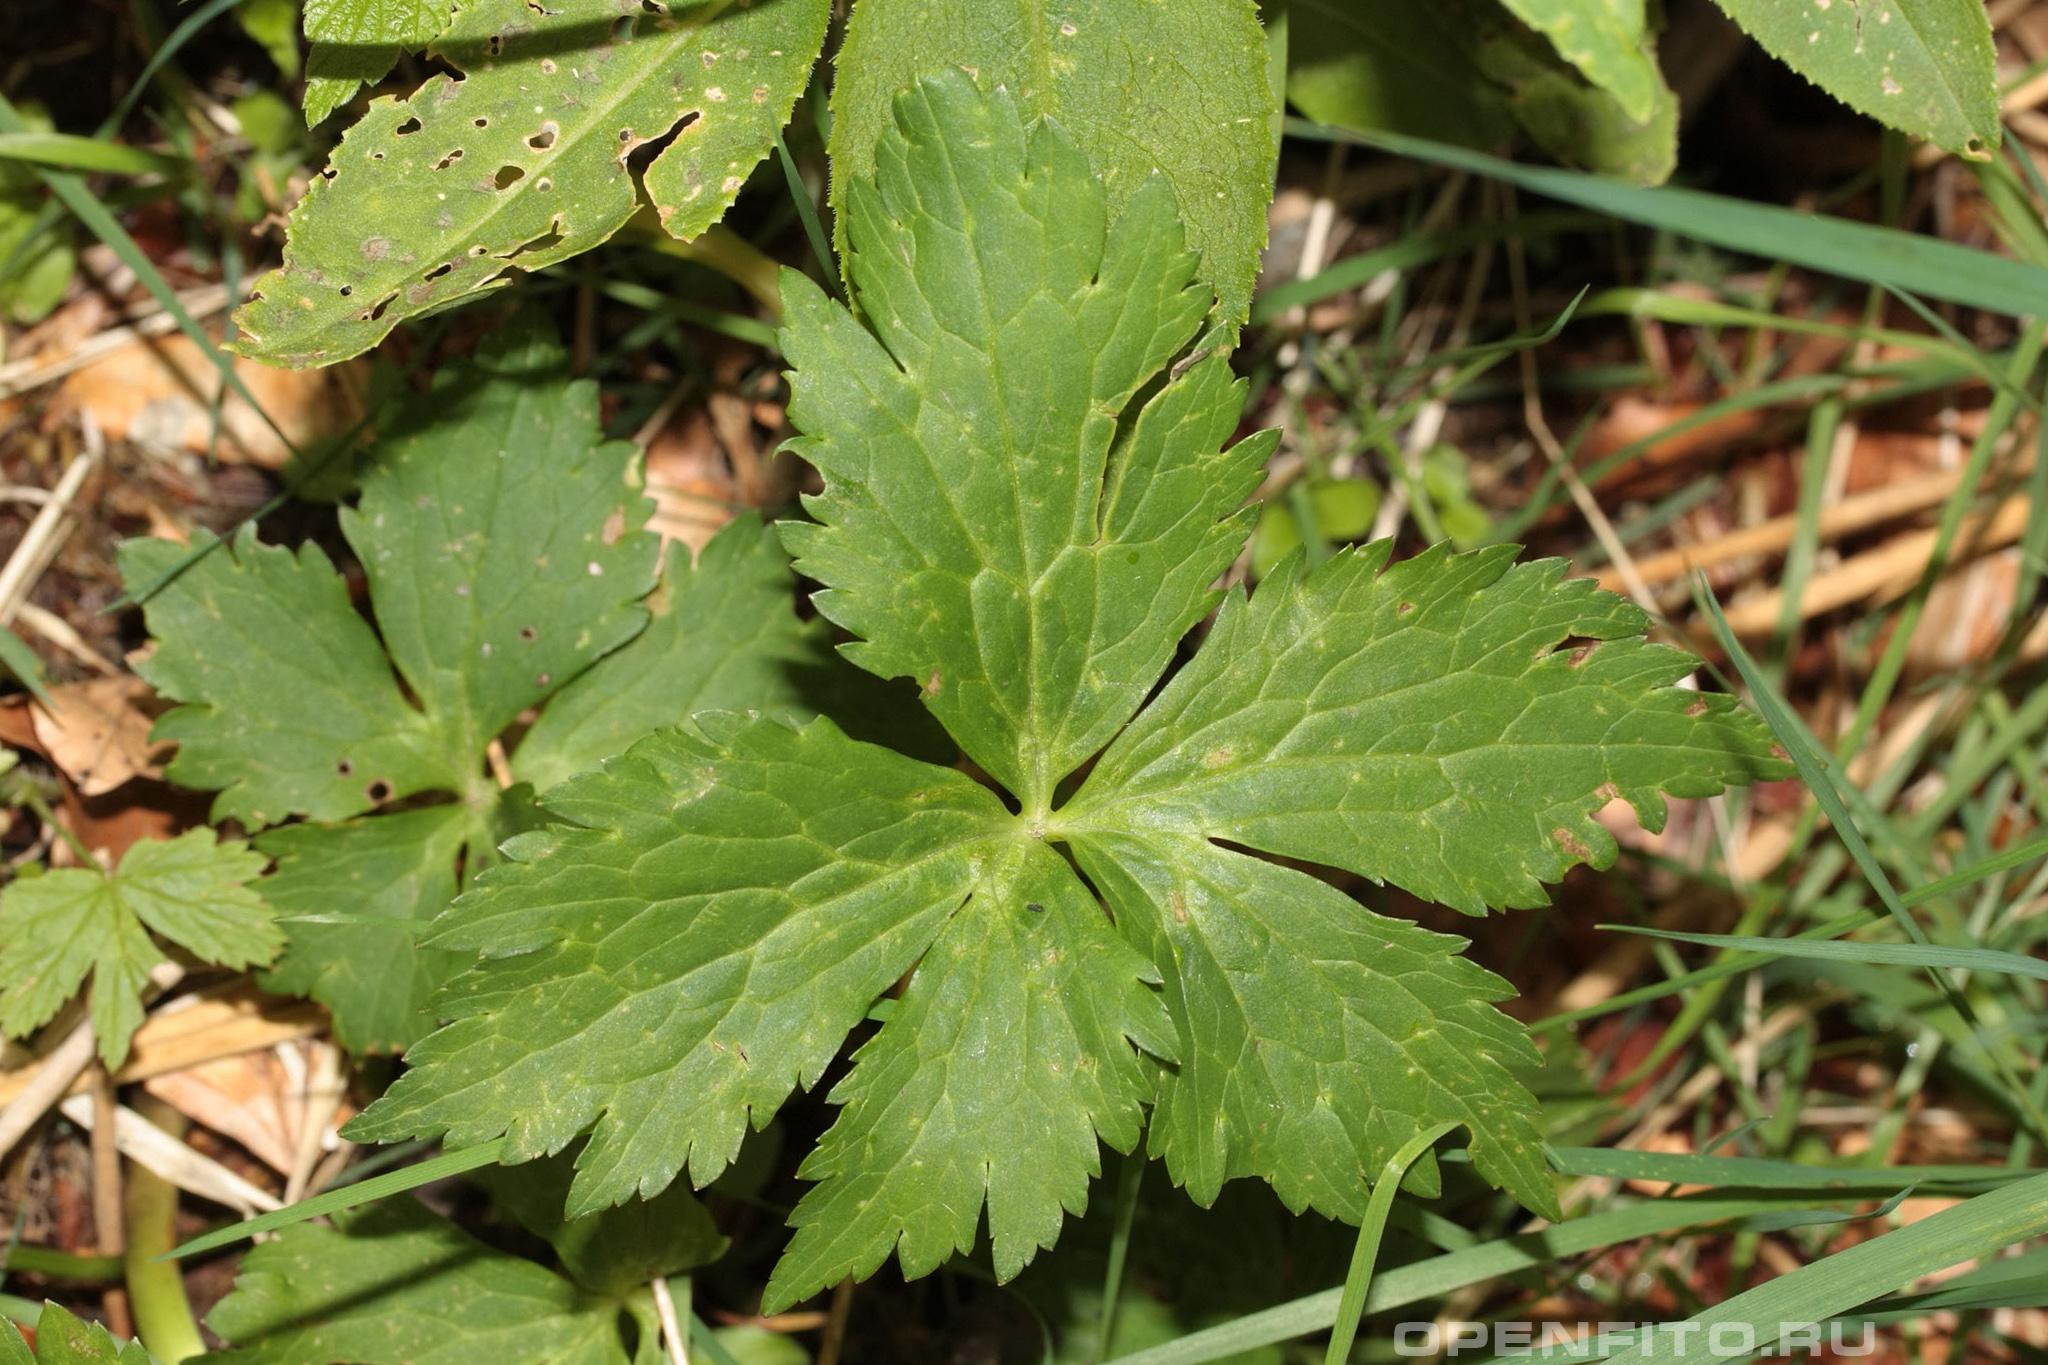 Лютик платанолистный лист растения, другое название Ранула платанолистная